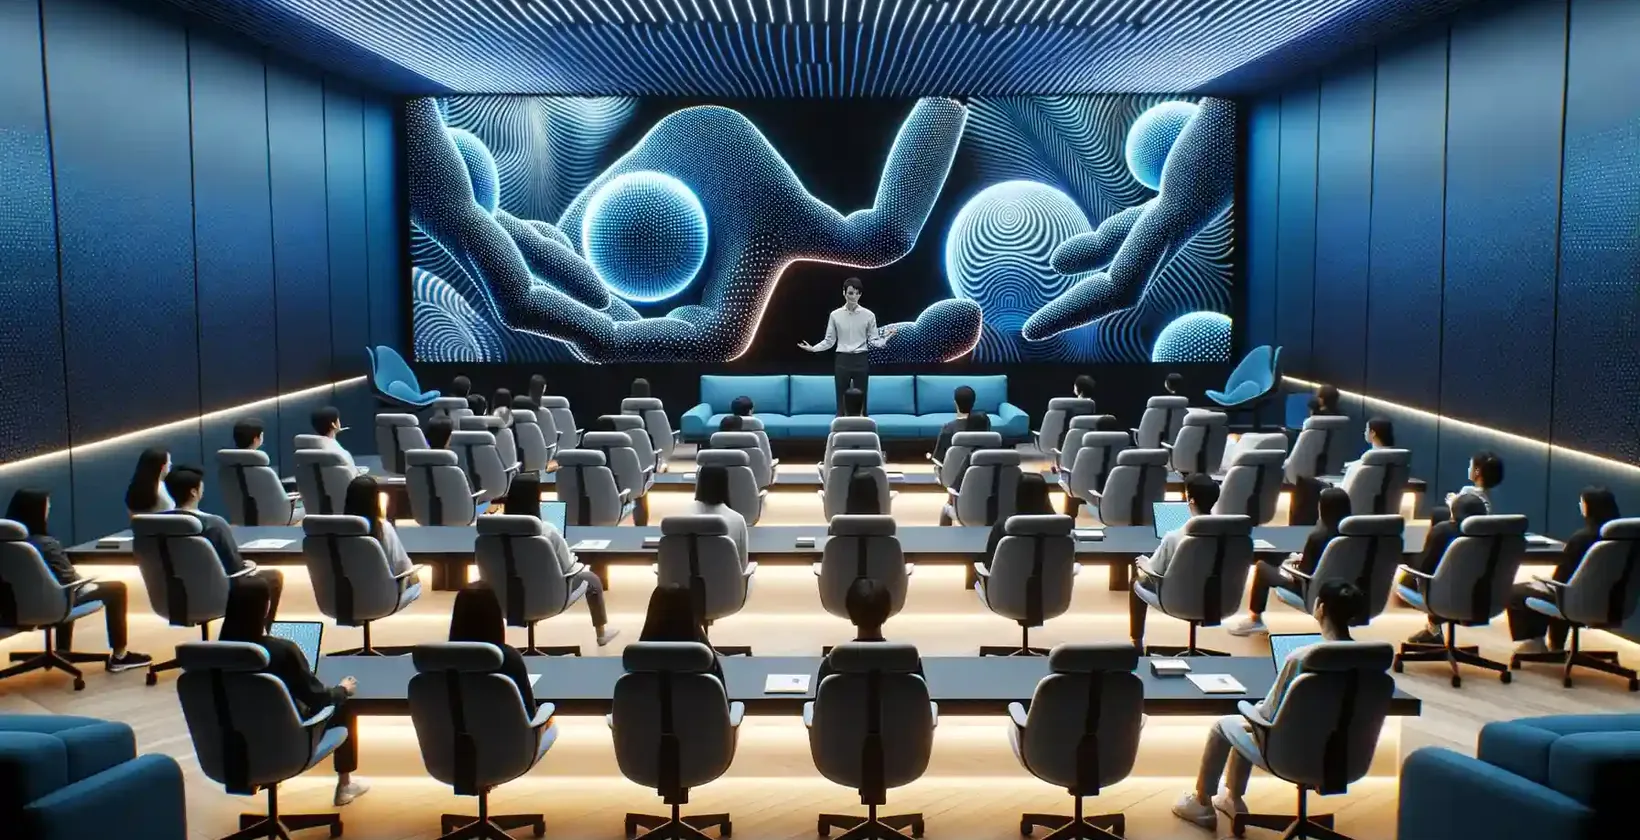 개별 워크스테이션이 설치된 푹신한 의자에 앉은 참석자들로 가득 찬 현대적인 강의실